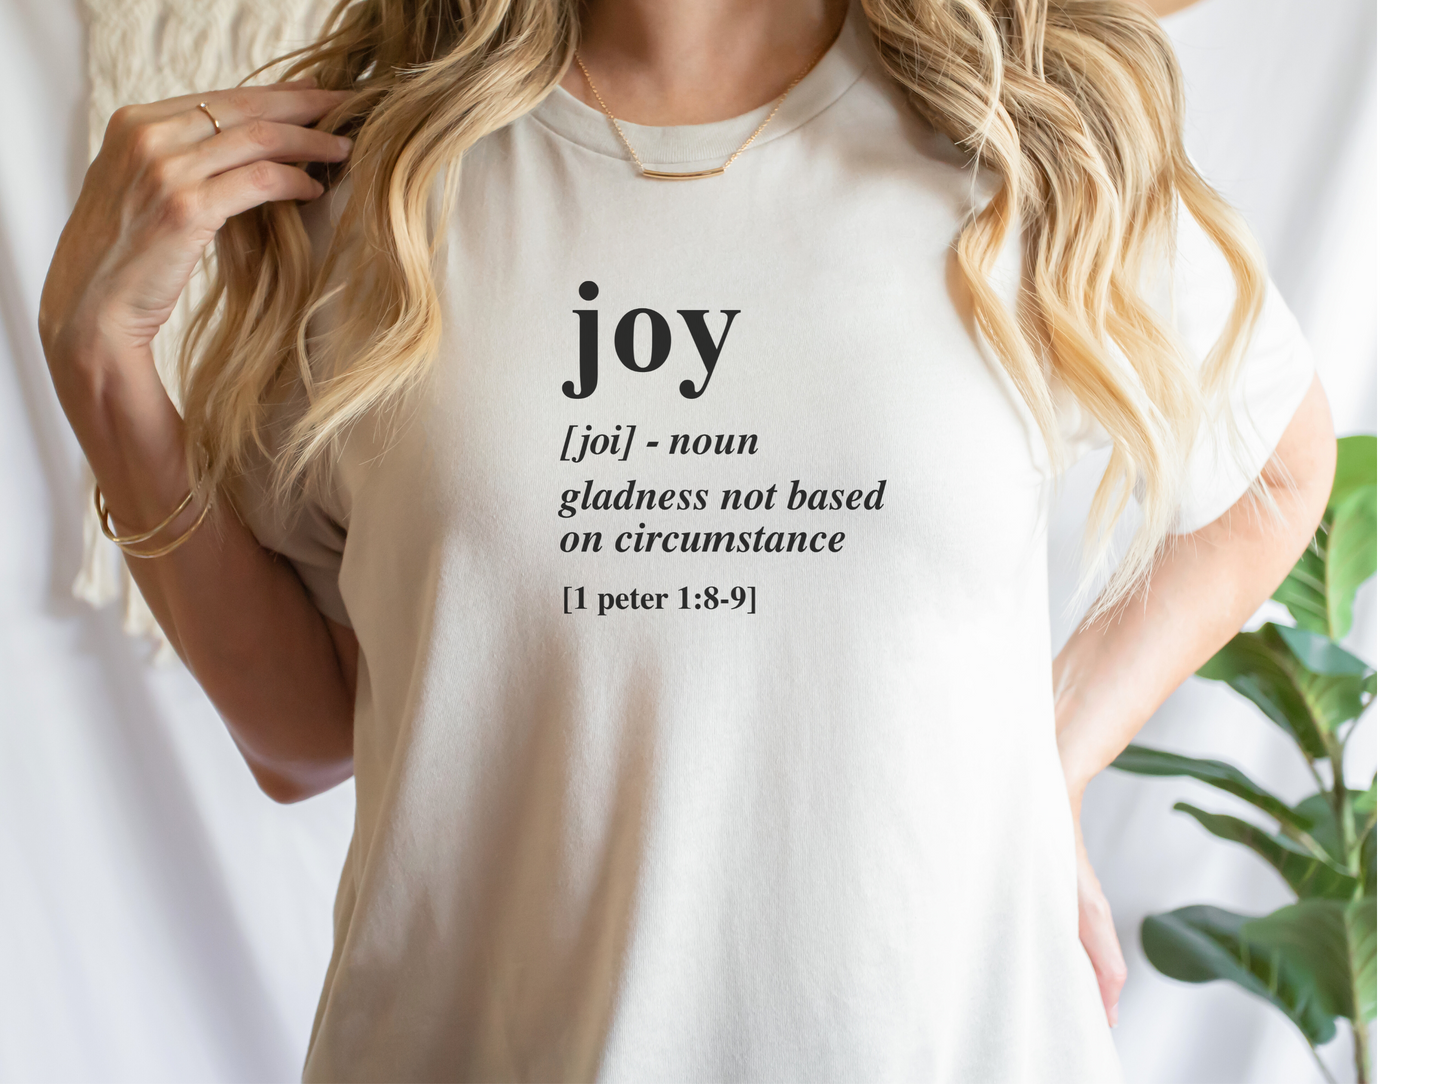 Joy definition Short Sleeve T-Shirt, 1 Peter 1:8-9